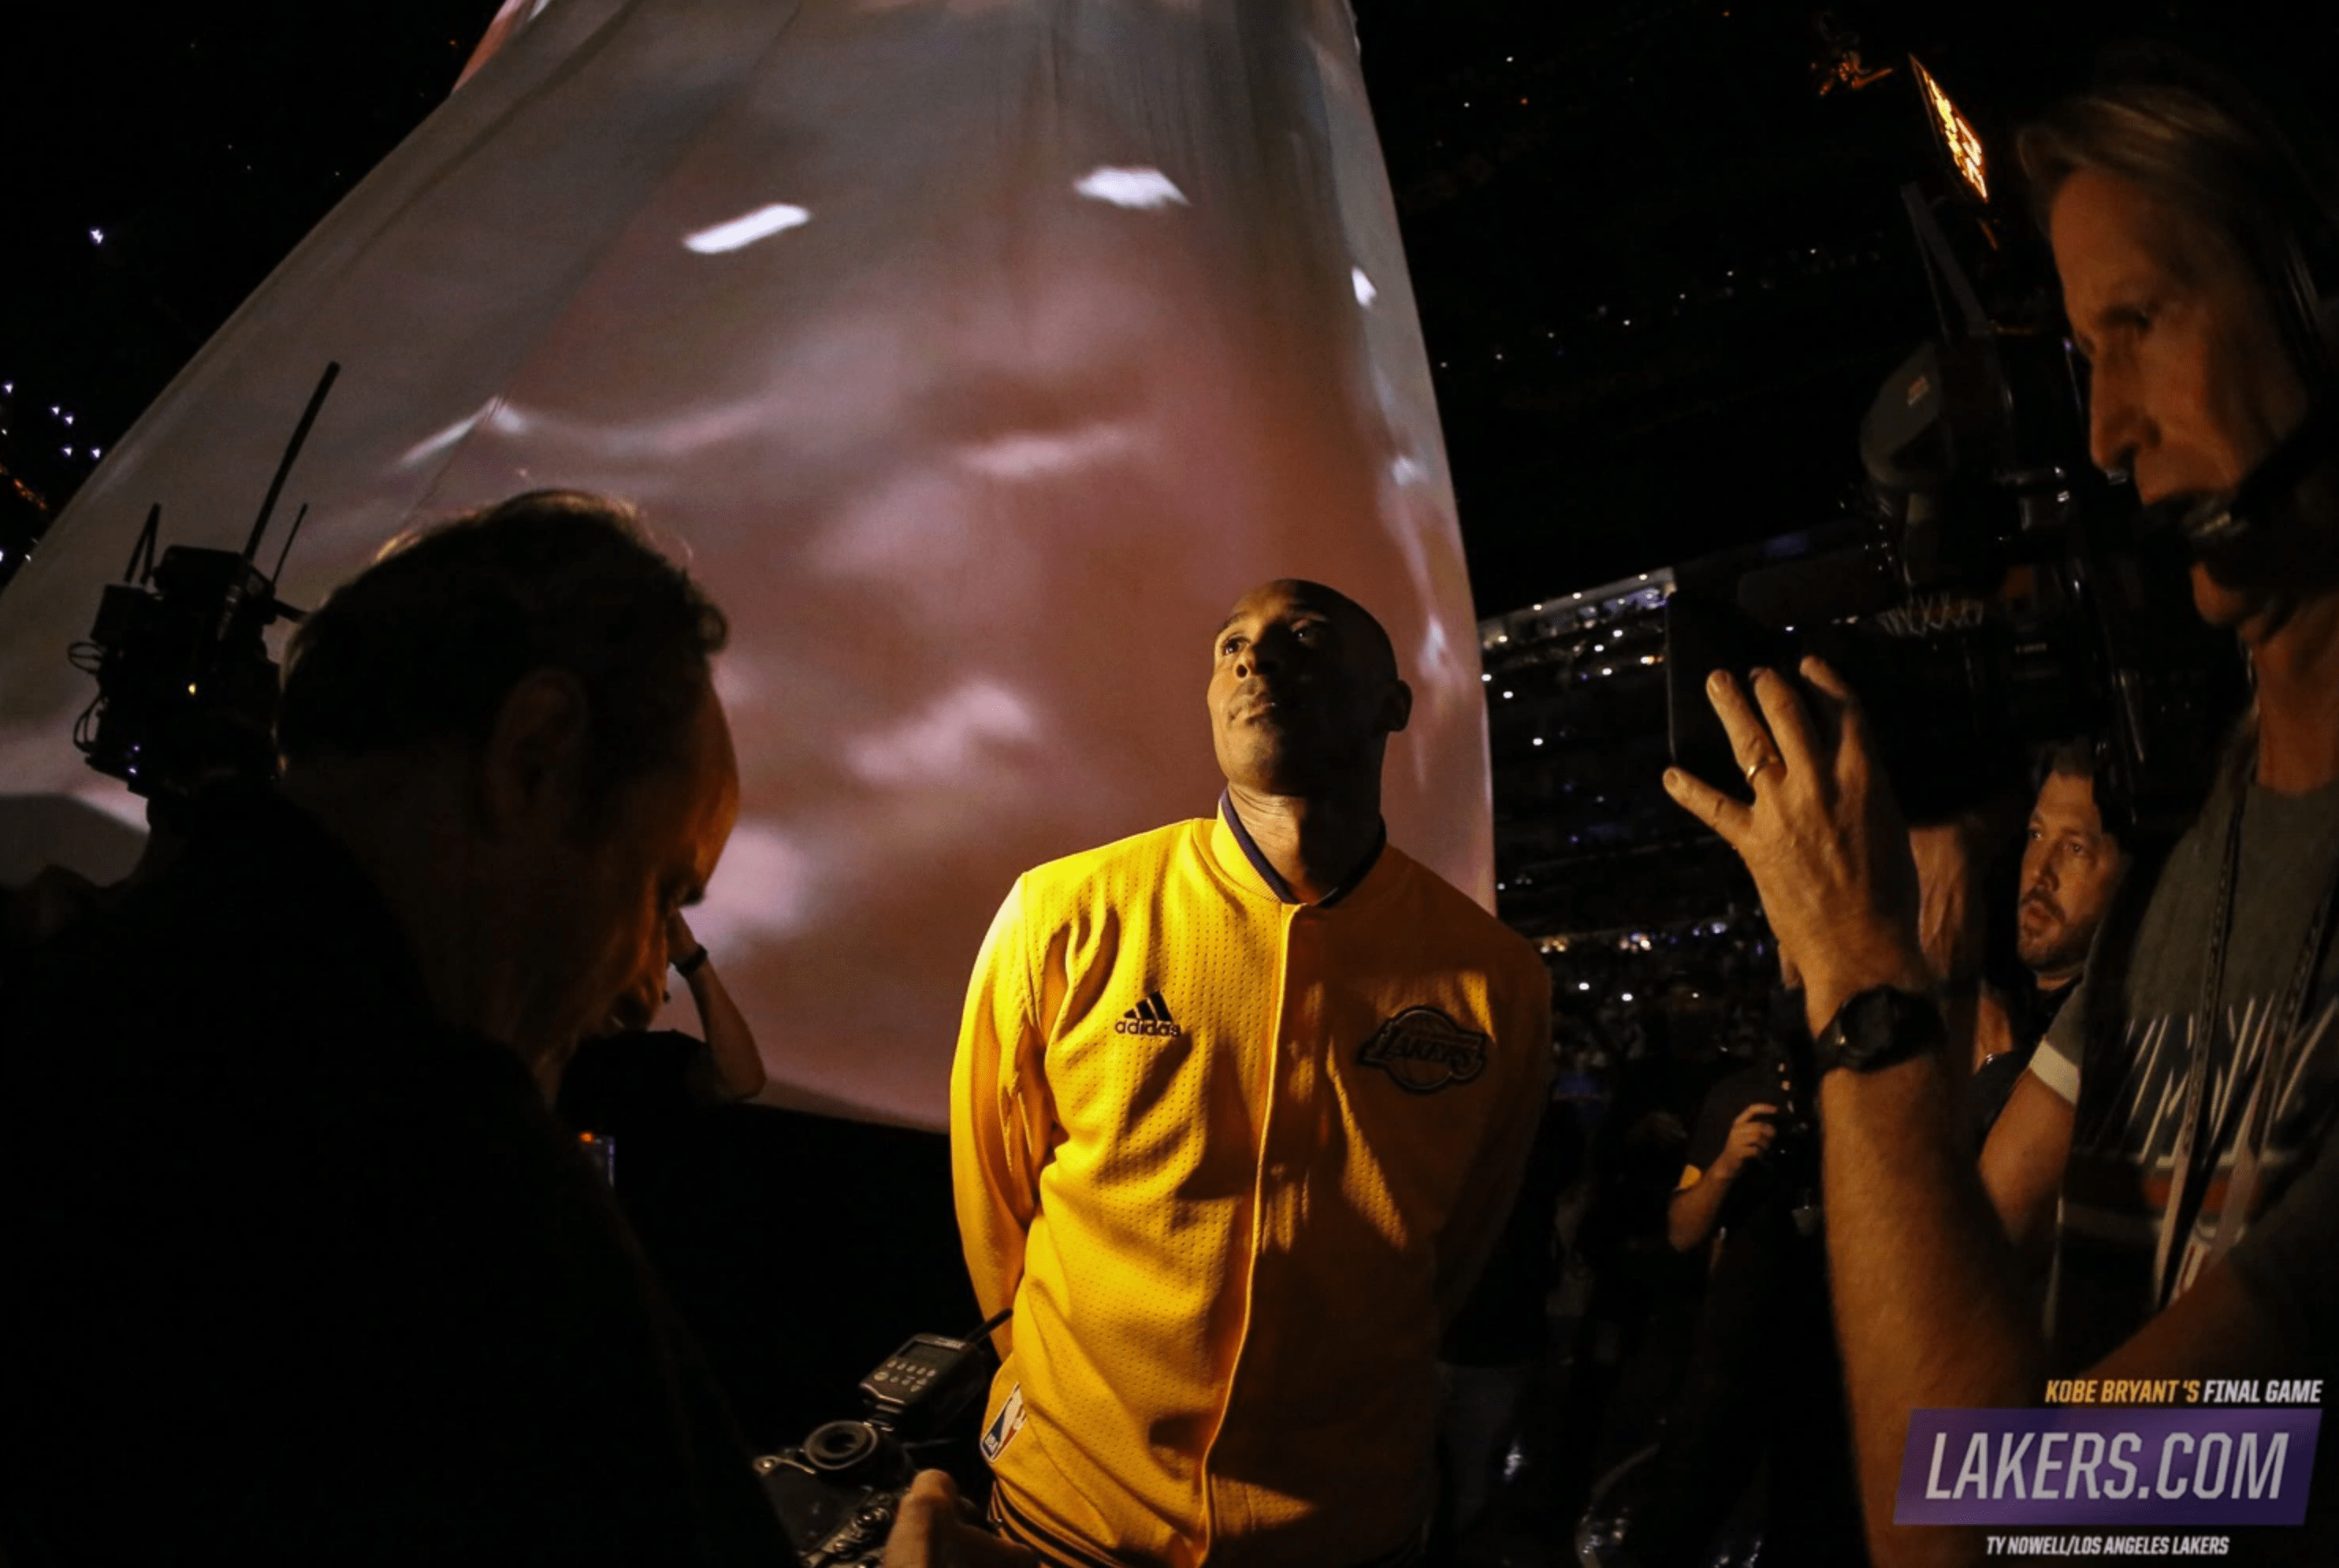 Tras un accidente en helicóptero en Calabasas, California. El exjugador de Los Ángeles Lakers, Kobe Bryant, fallece a los 41 años. Fotografía Prensa Libre: Lakers.com